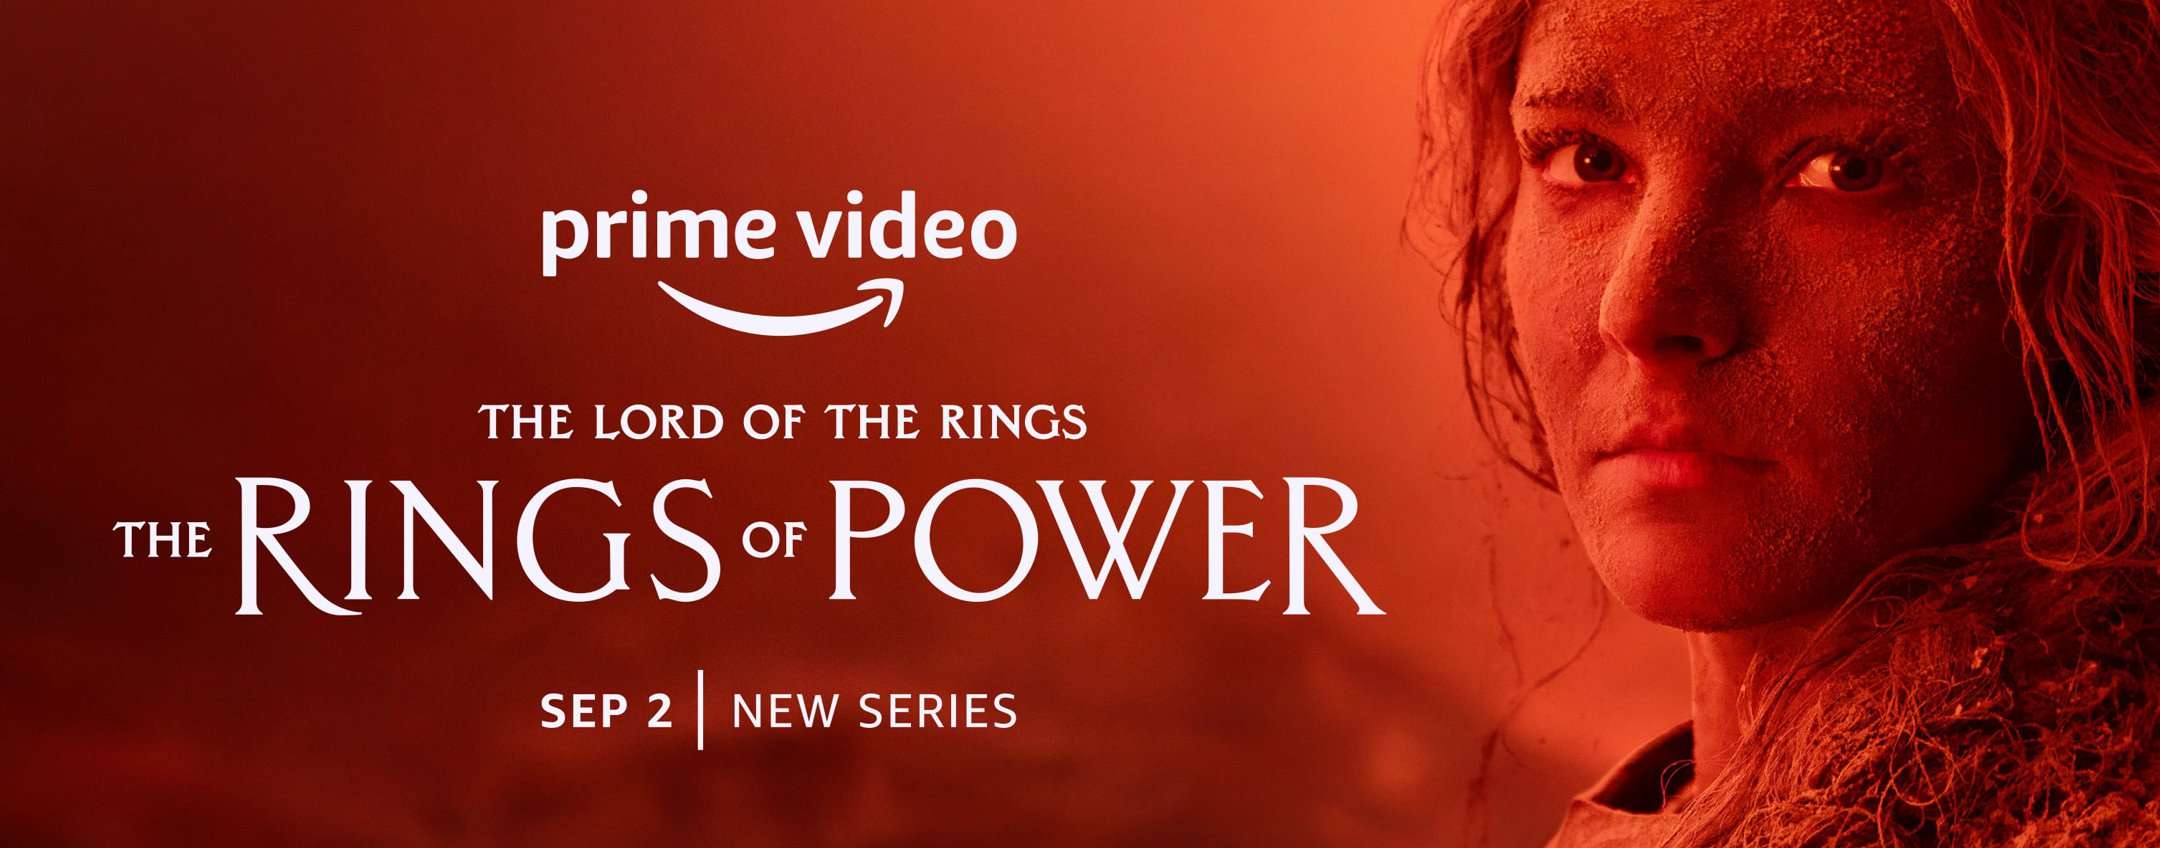 Il Signore degli Anelli da oggi su Prime Video: cast, episodi, info e  trailer della serie - TvBlog